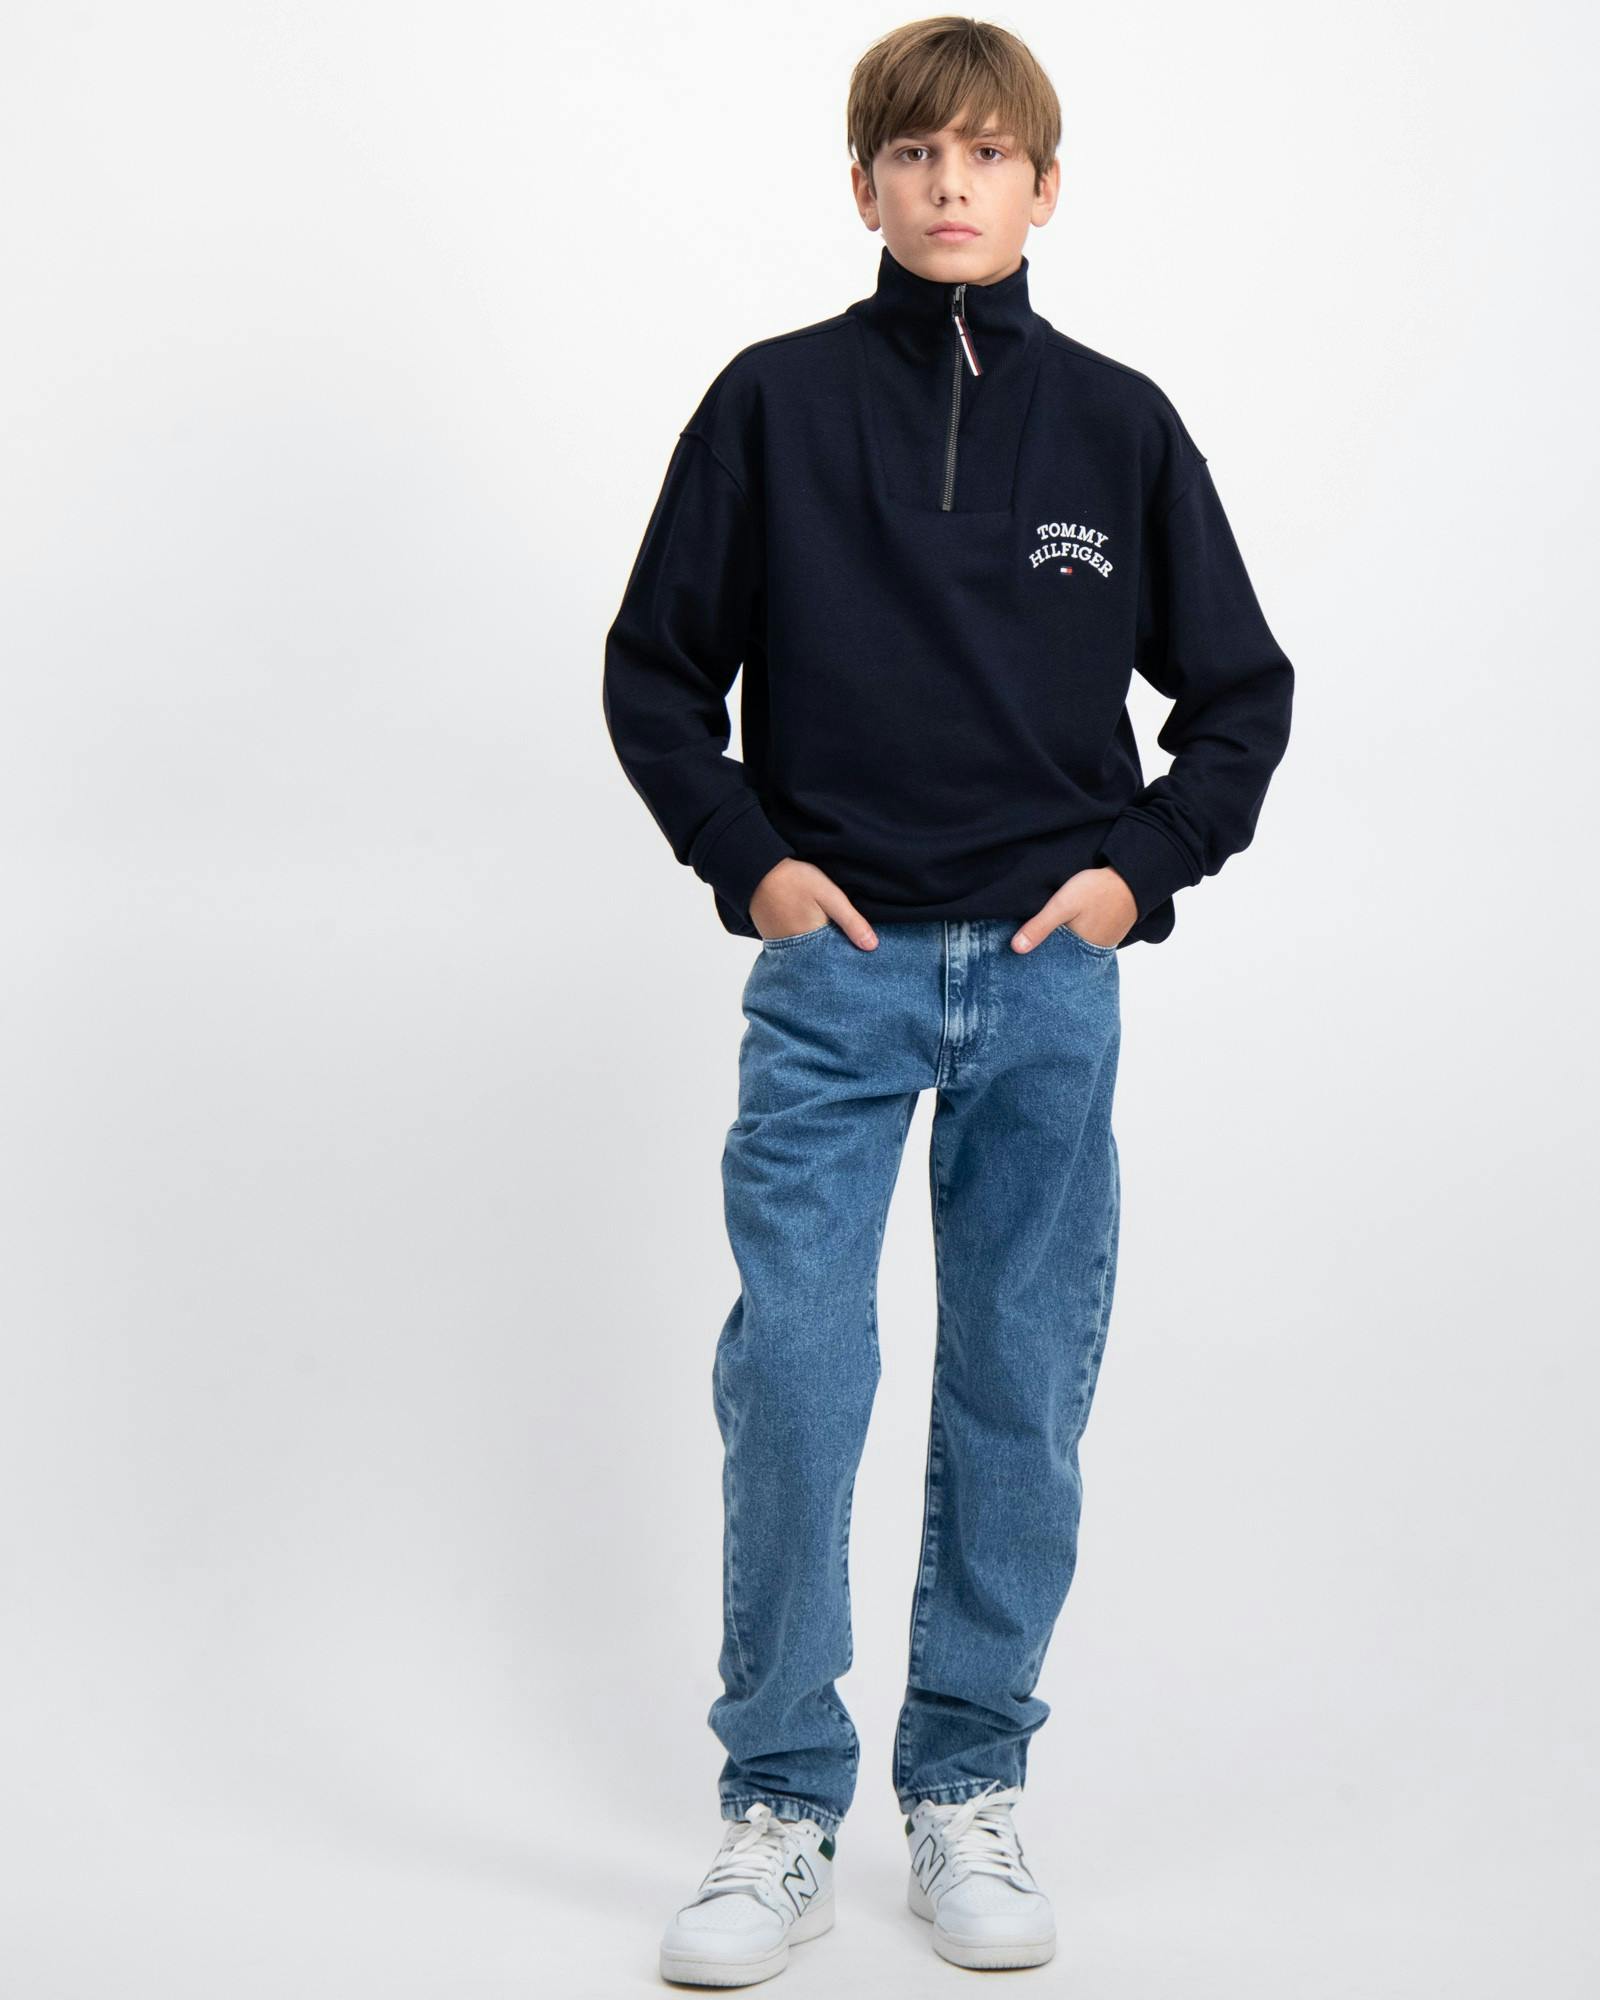 Jeans | Kids Jugendliche Store und Hilfiger Kinder Tommy für Brand